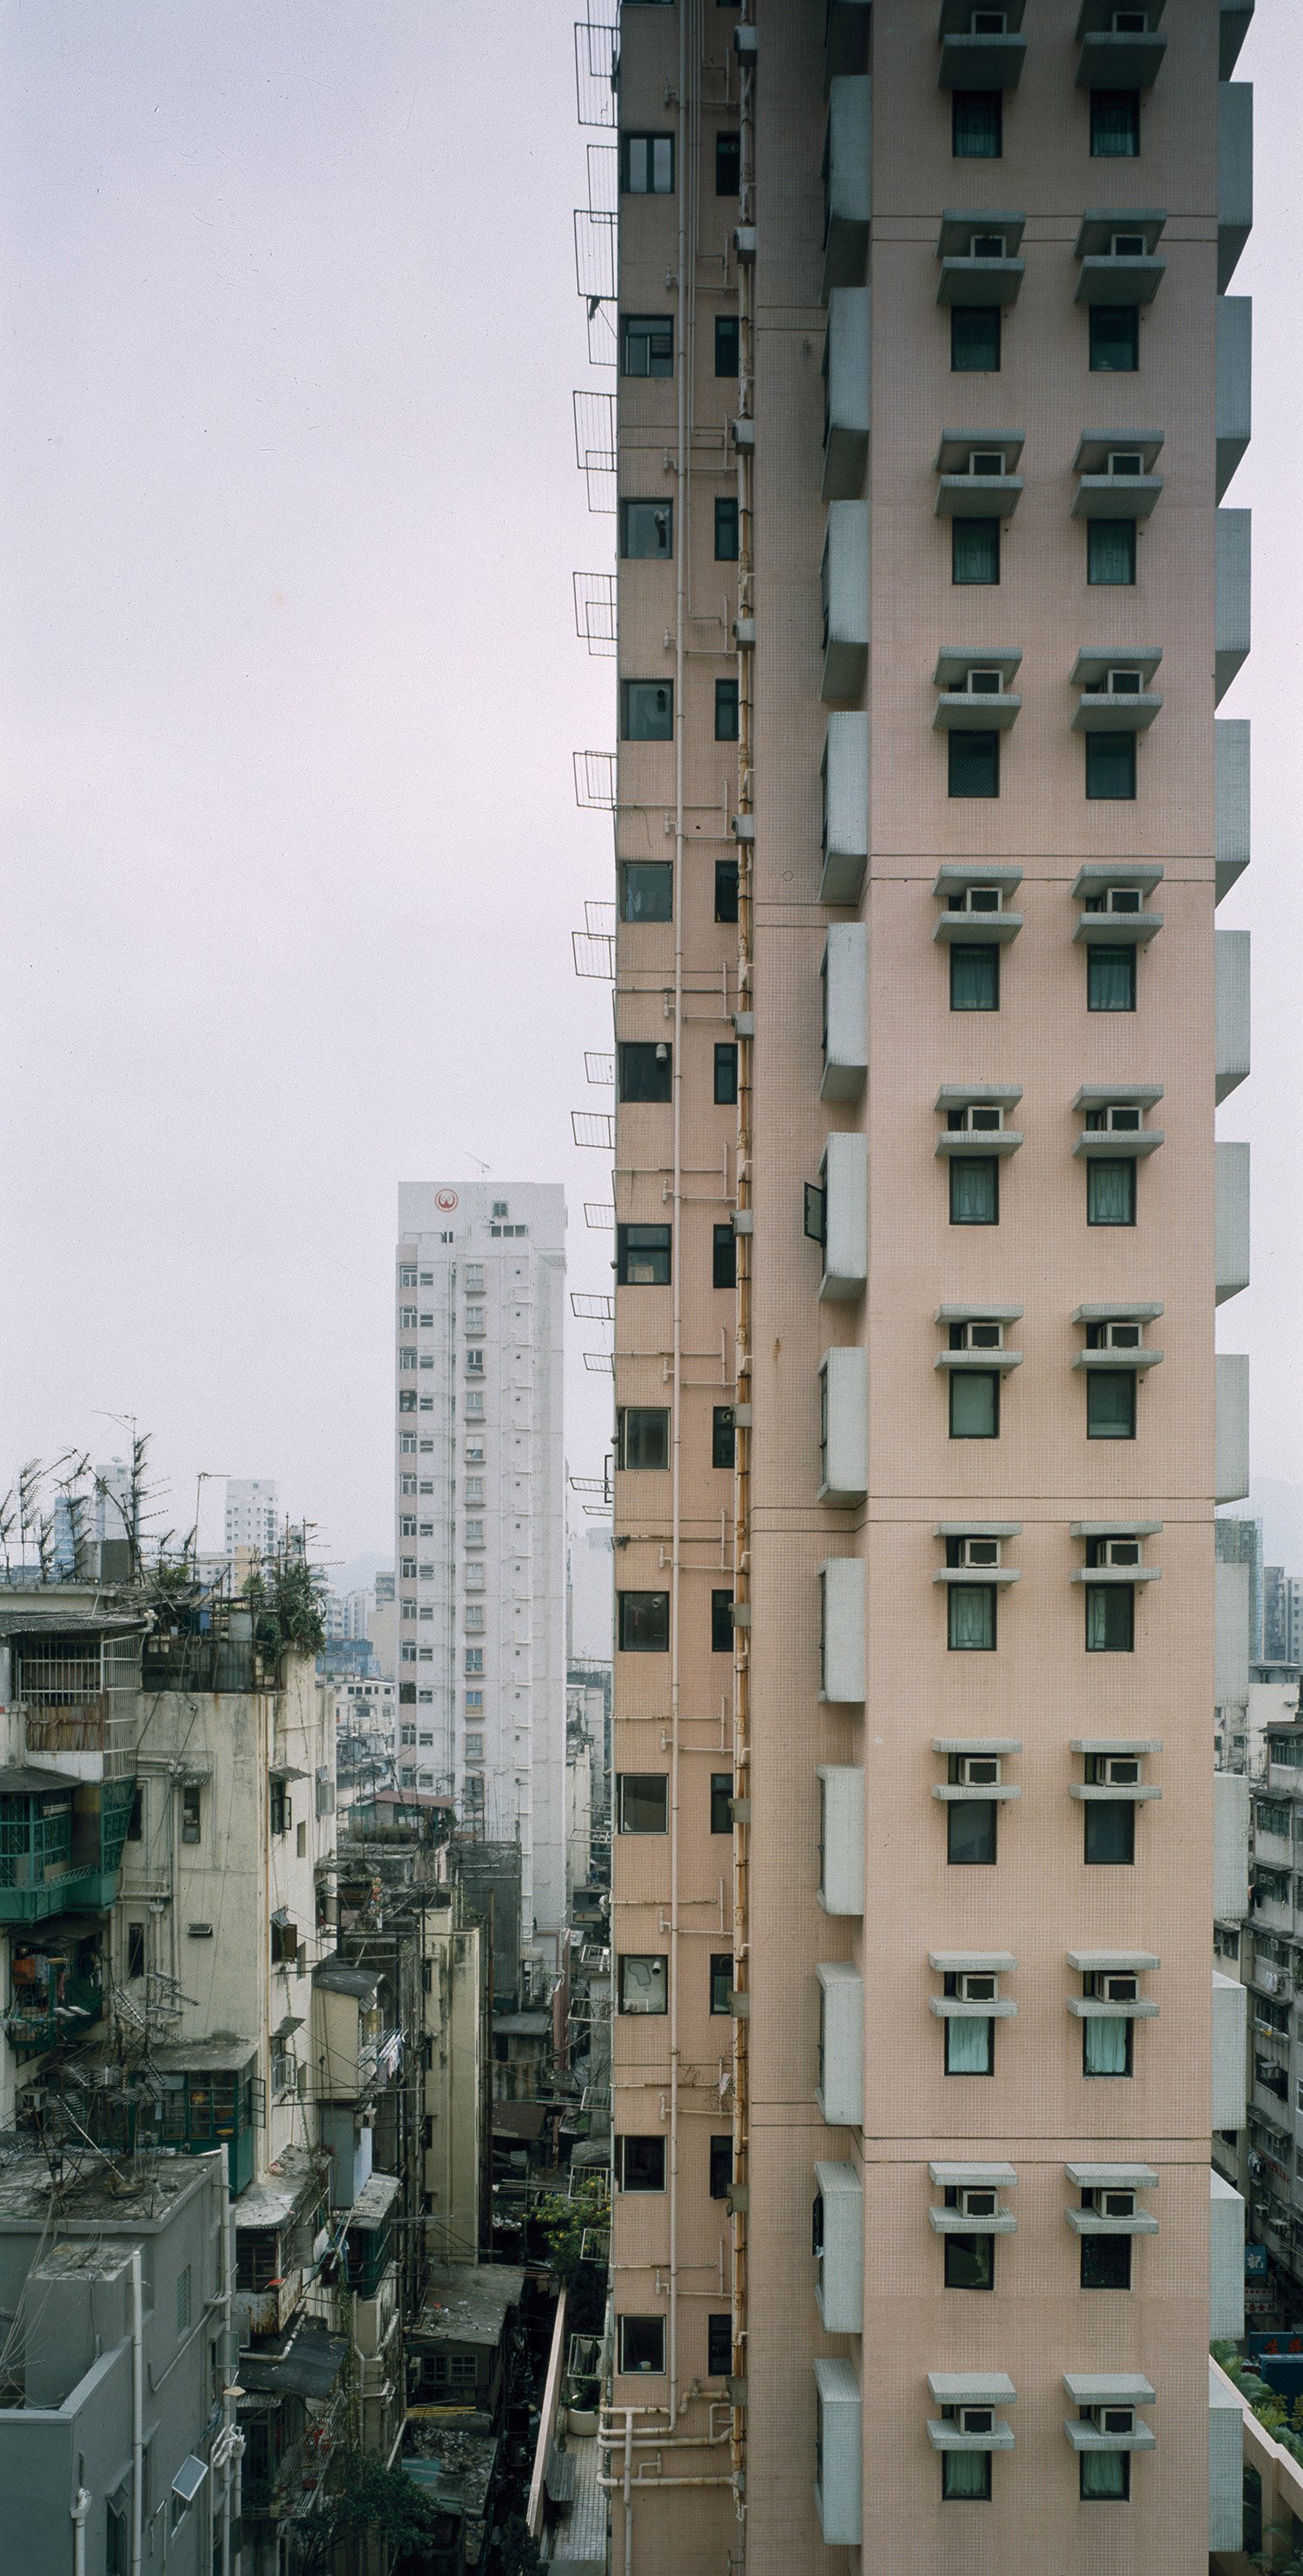 Hong Kong (XI 58.6).jpg